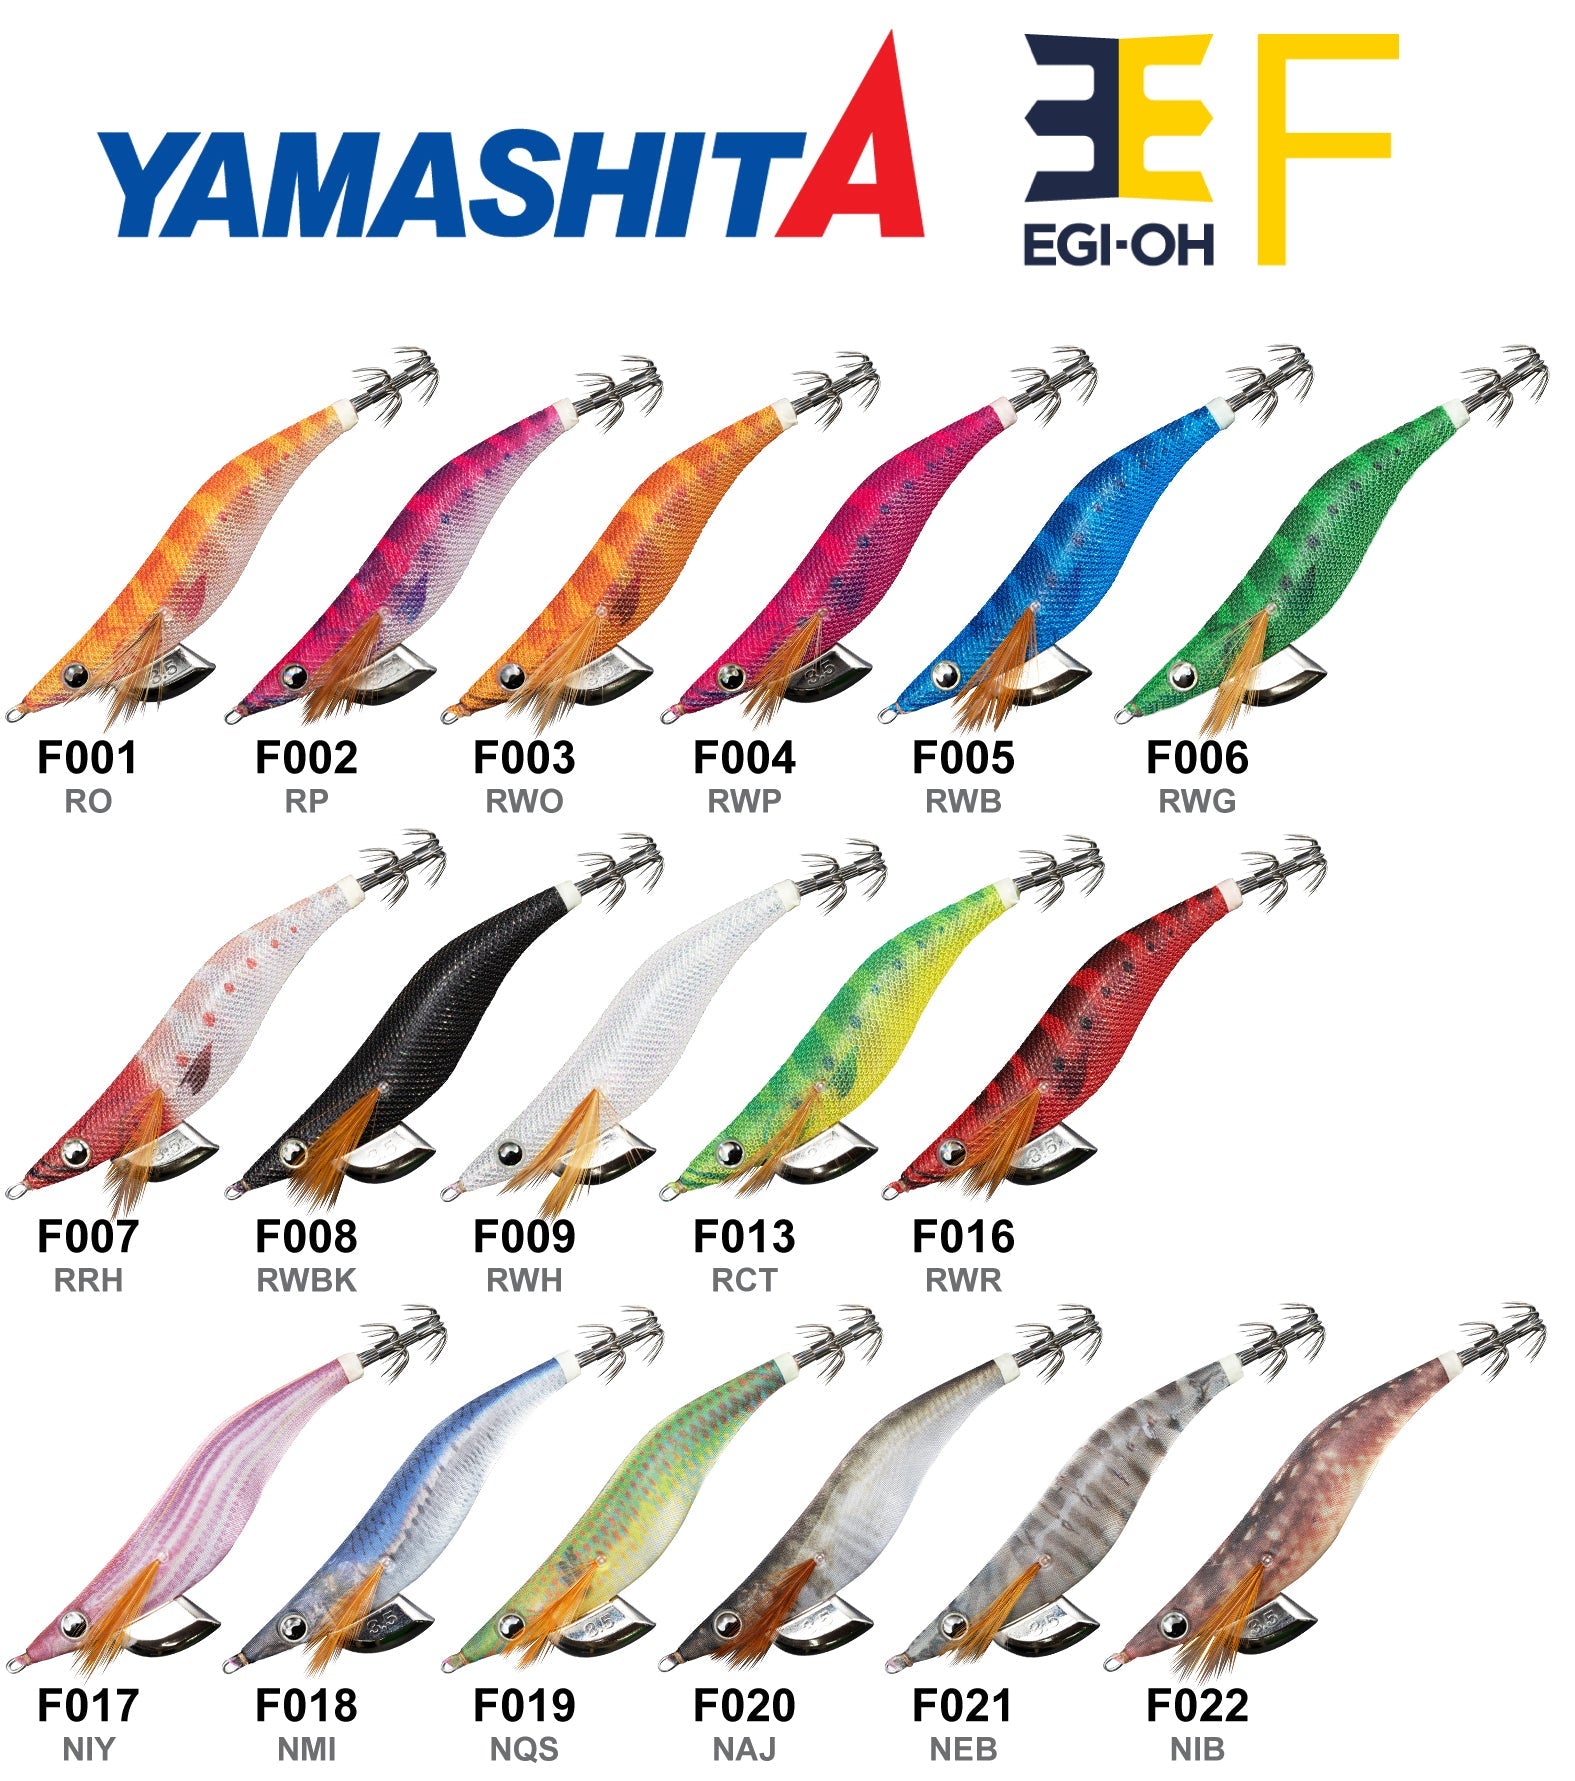 Yamashita Egi OH F 3.5 – Isofishinglifestyle